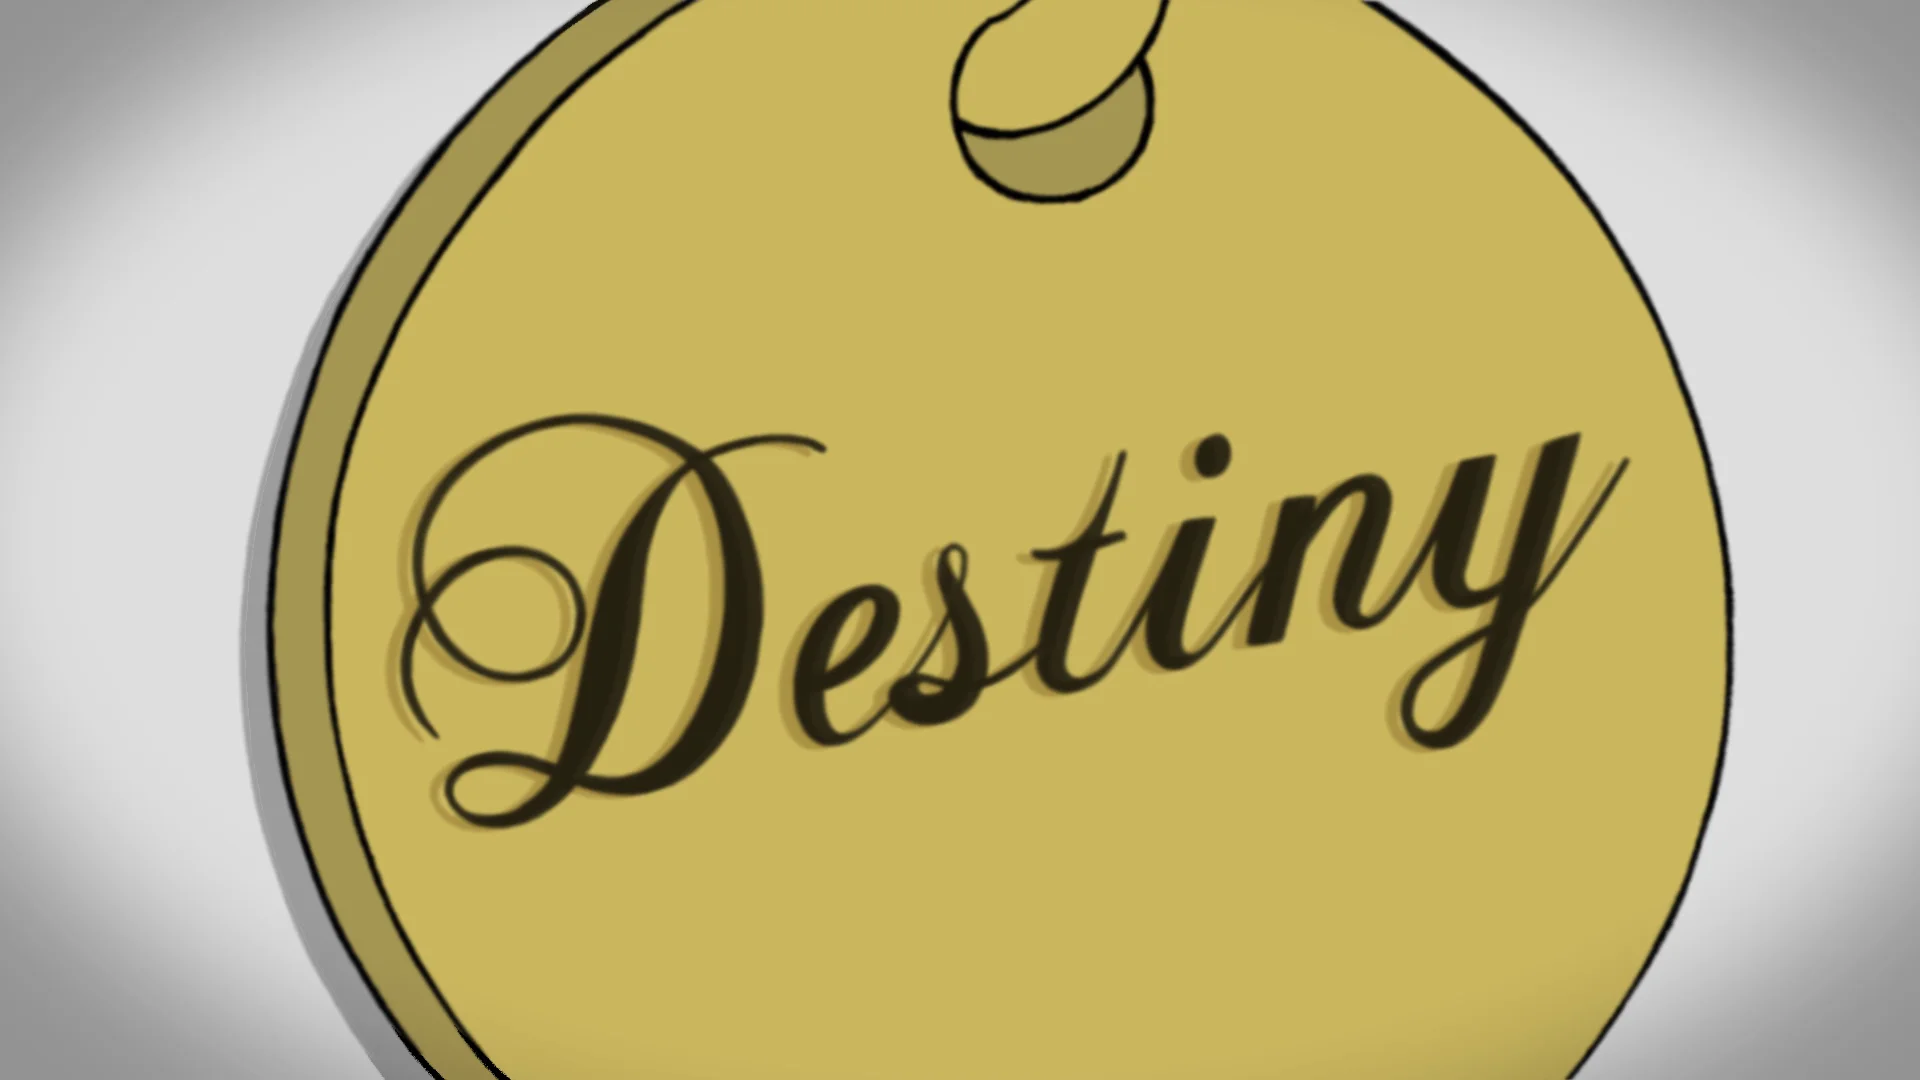 the name destiny in cursive